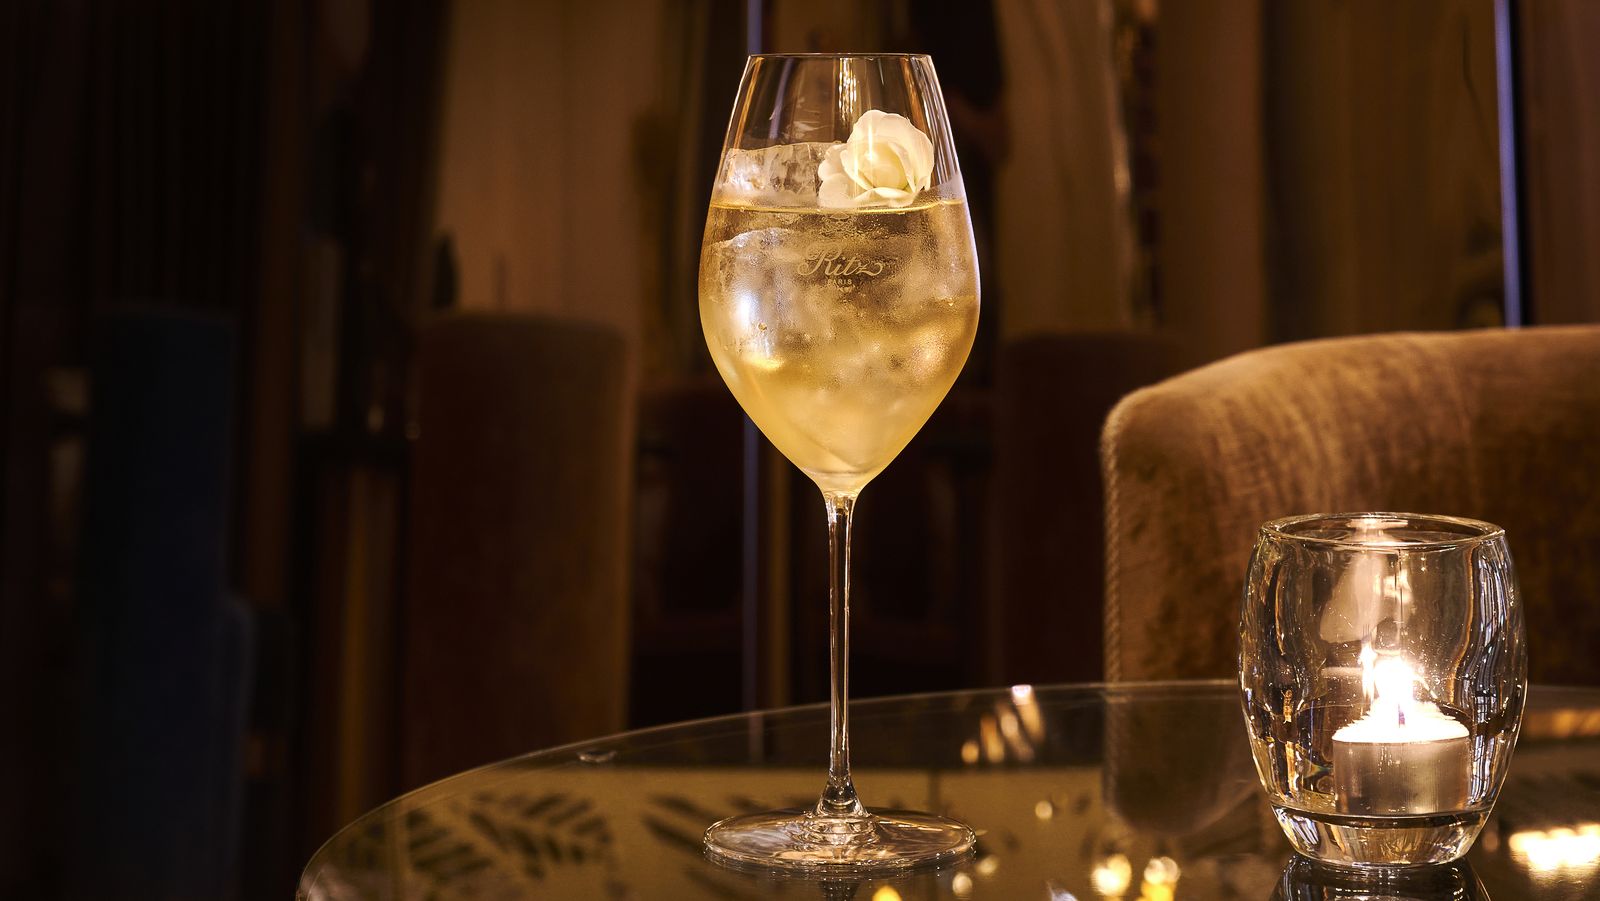 Изысканный коктейль по случаю 125-летнего юбилея легендарного гранд-отеля Ritz Paris от шеф-бармена Ромена де Курси